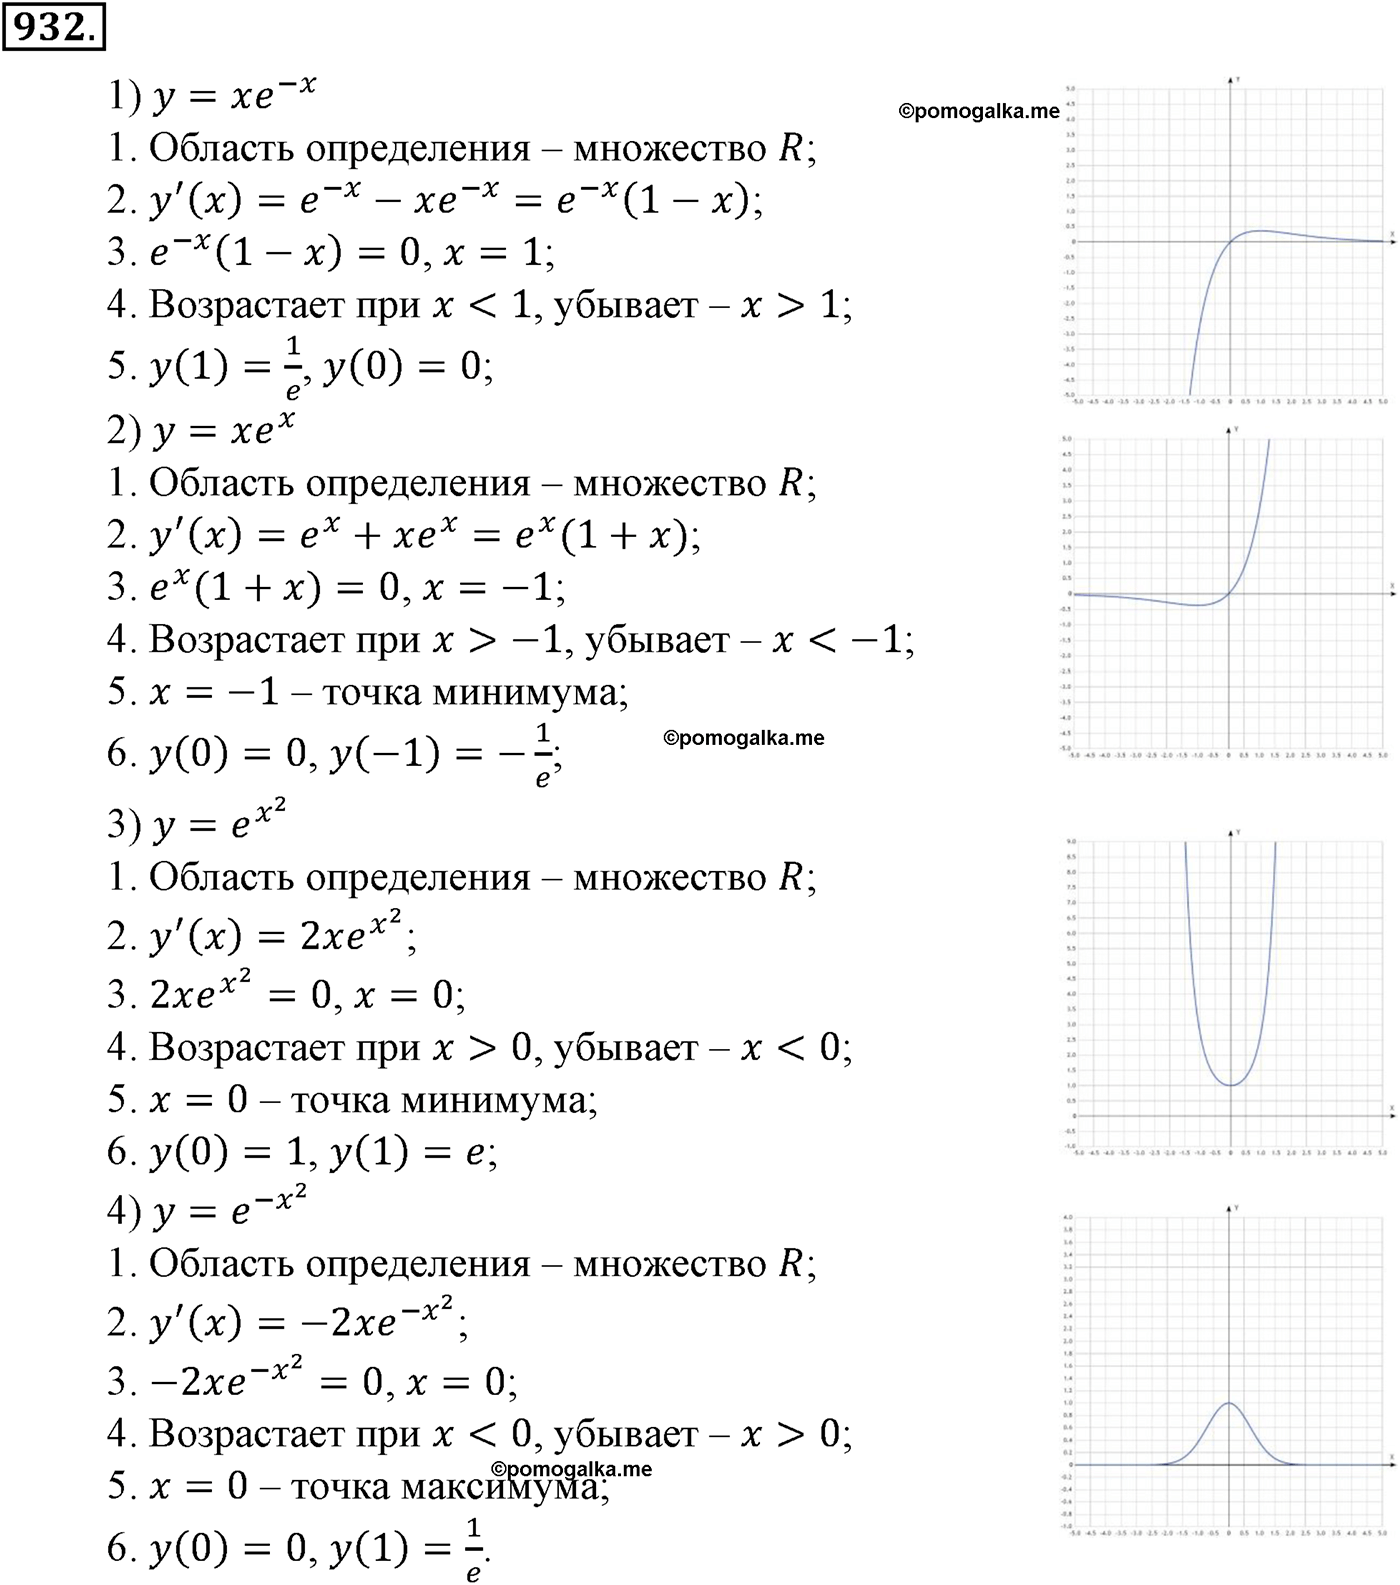 разбор задачи №932 по алгебре за 10-11 класс из учебника Алимова, Колягина